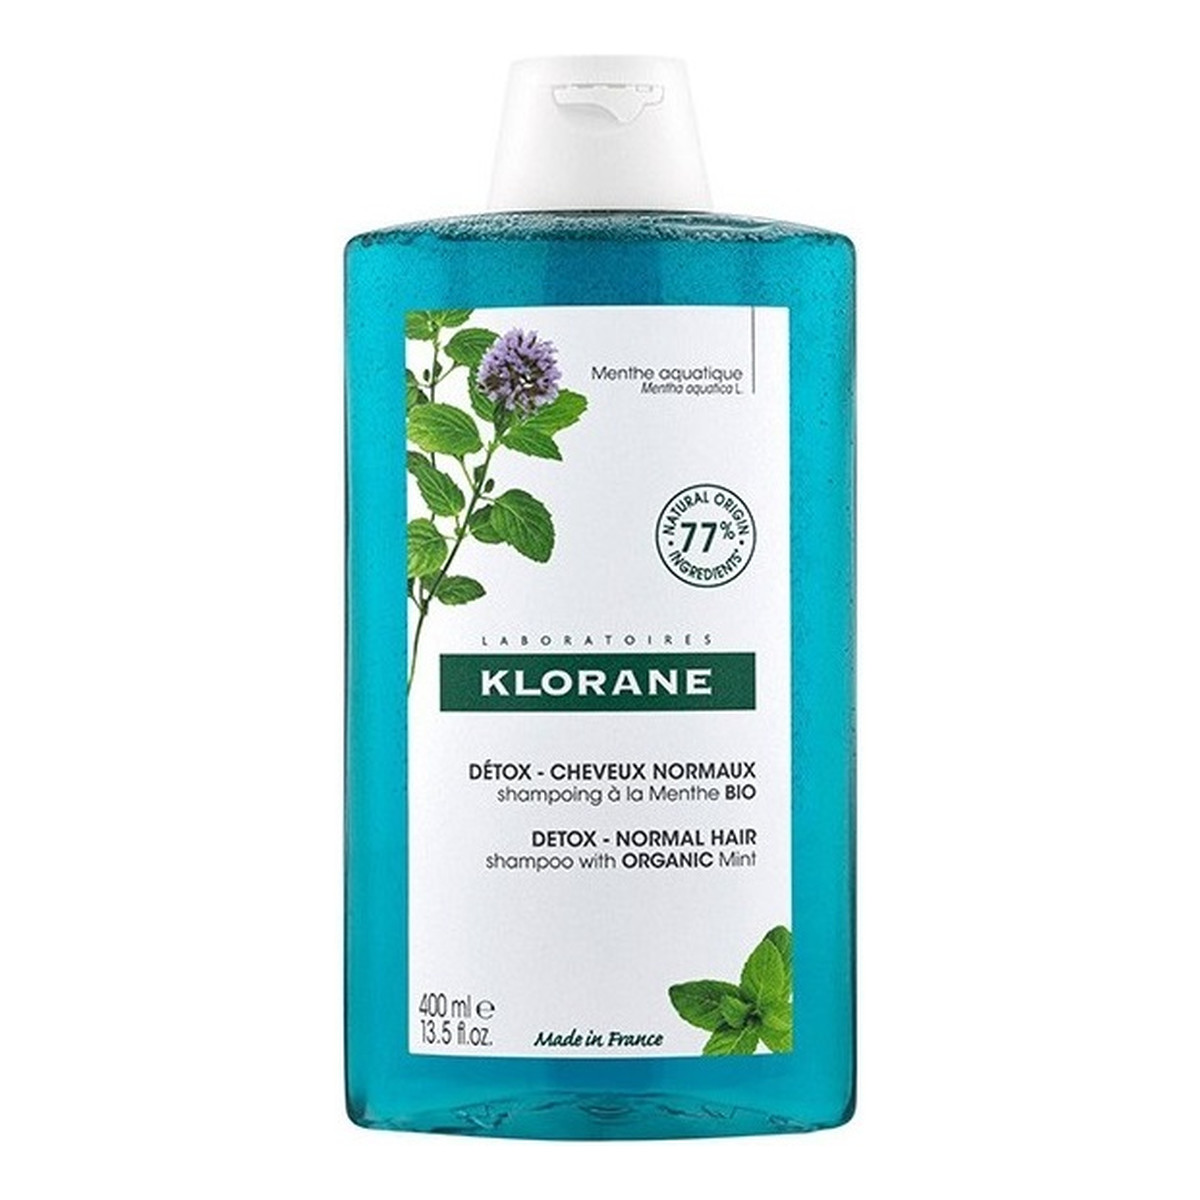 Klorane Anti-Pollution Shampooing Detox Intensywnie oczyszczający szampon do skóry głowy Aquatic Mint 400ml